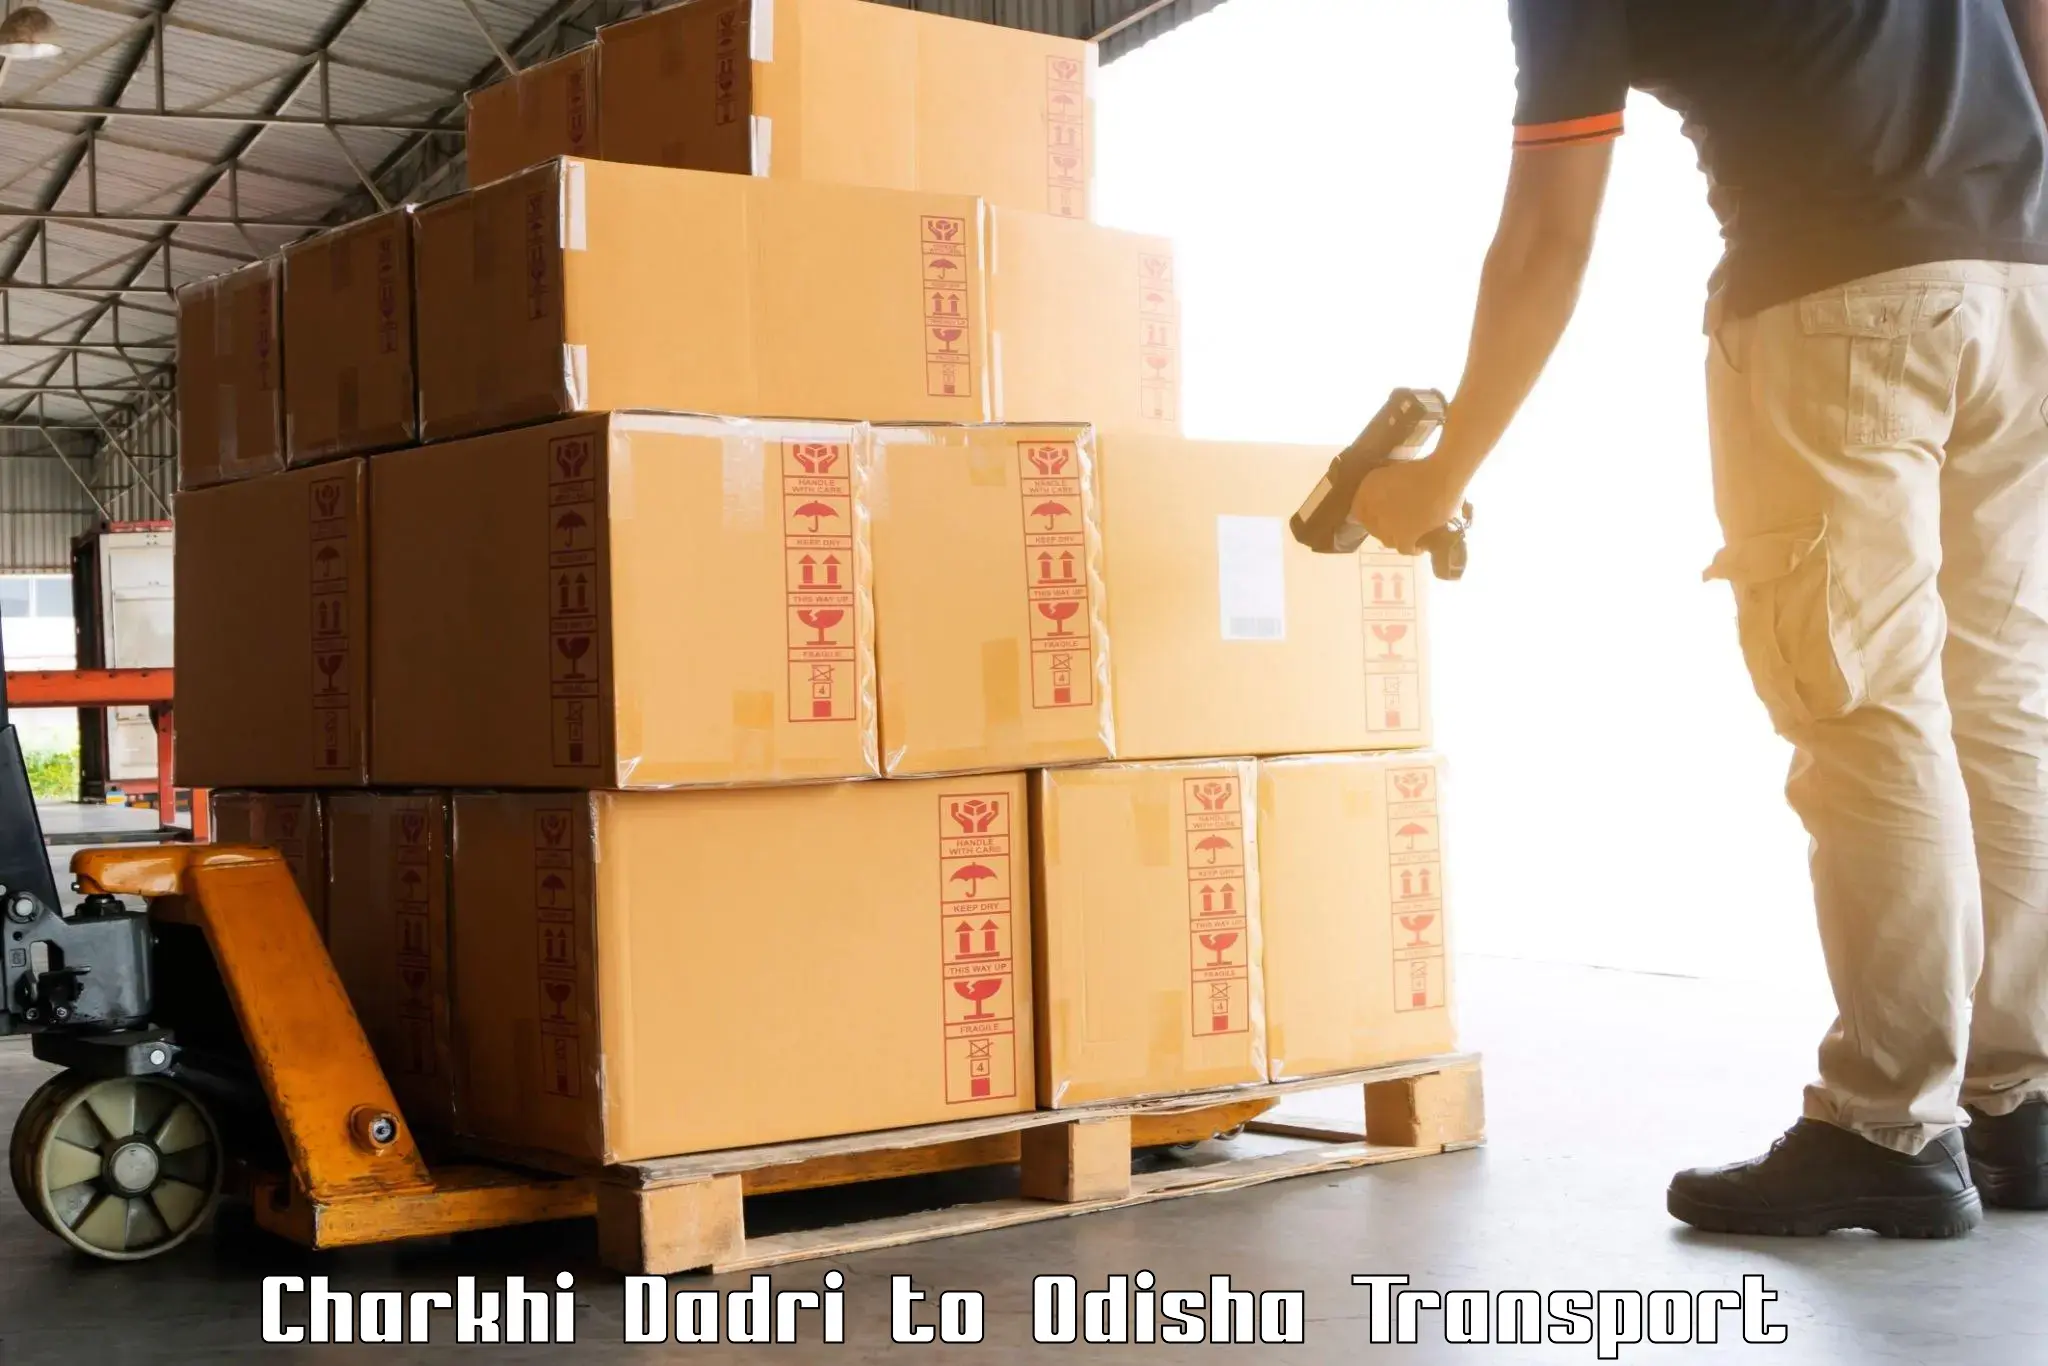 Container transport service Charkhi Dadri to Ukhunda